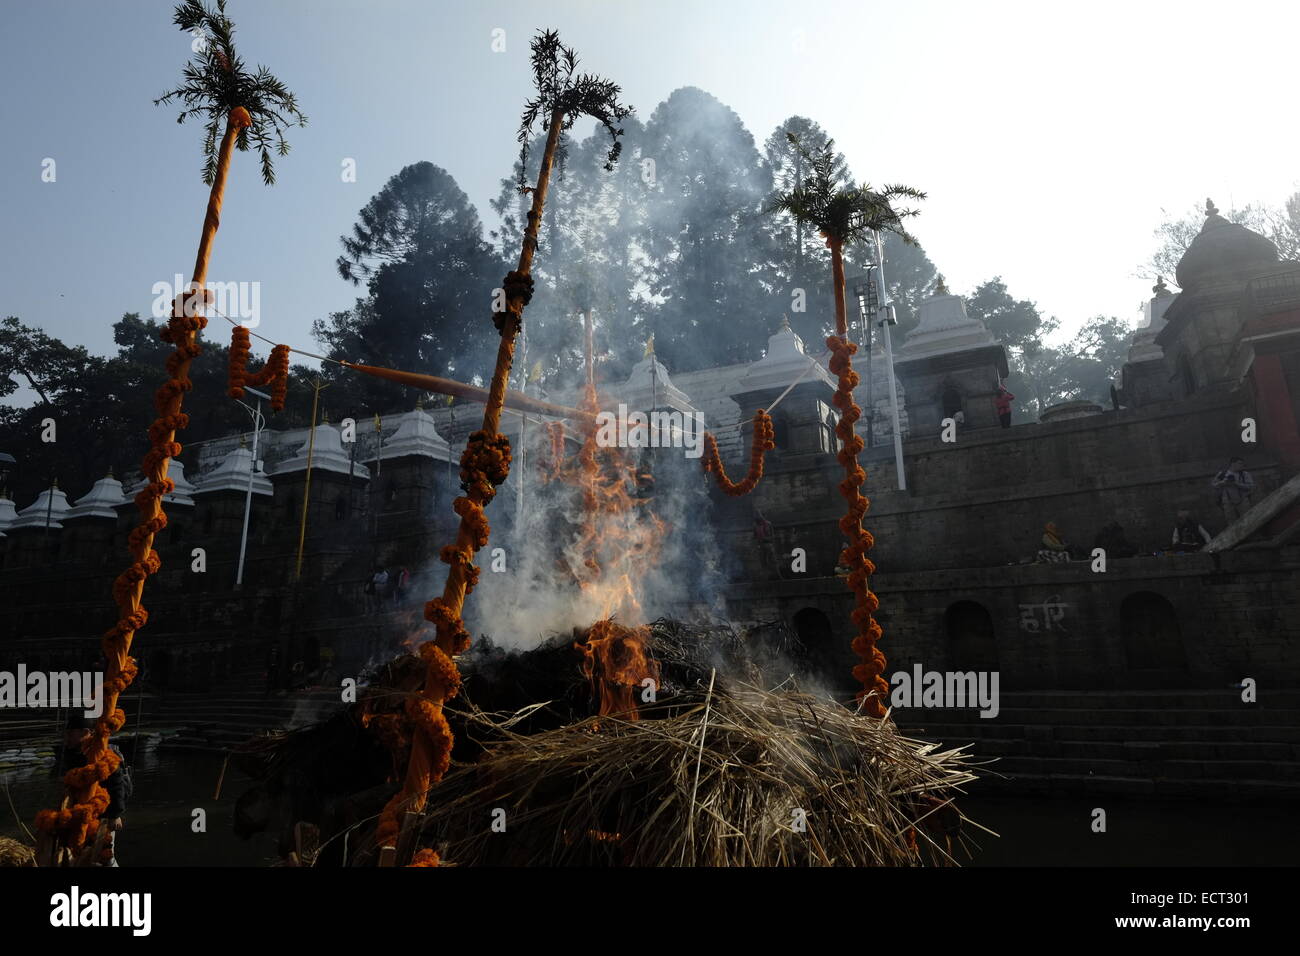 La cremazione dei morti avranno luogo presso il Tempio di Pashupatinath un indù santuario e uno dei più grandi siti di Shiva che si trova sulle rive del fiume Bagmati e elencato nella lista del Patrimonio Mondiale dell'UNESCO a Kathmandu in Nepal Foto Stock